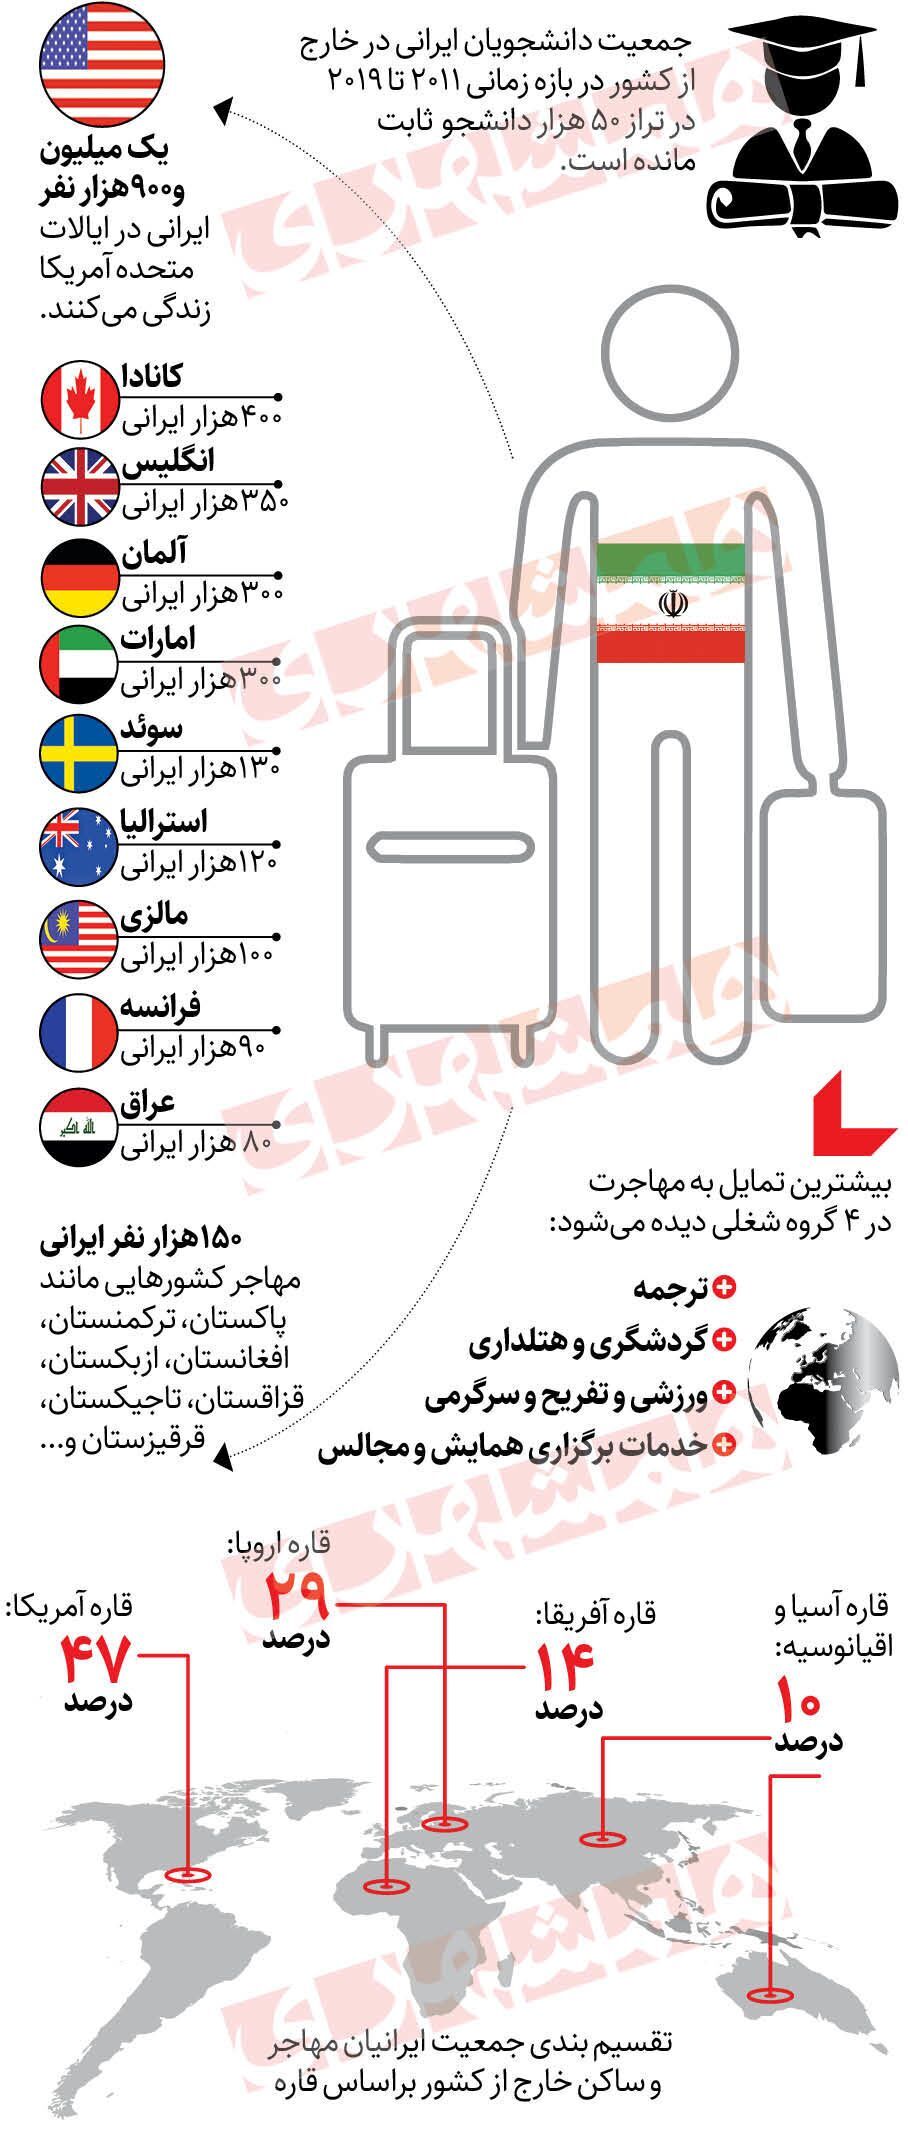 اینفوگرافی/ بیشترین مقصد مهاجرت ایرانیان کجاست؟